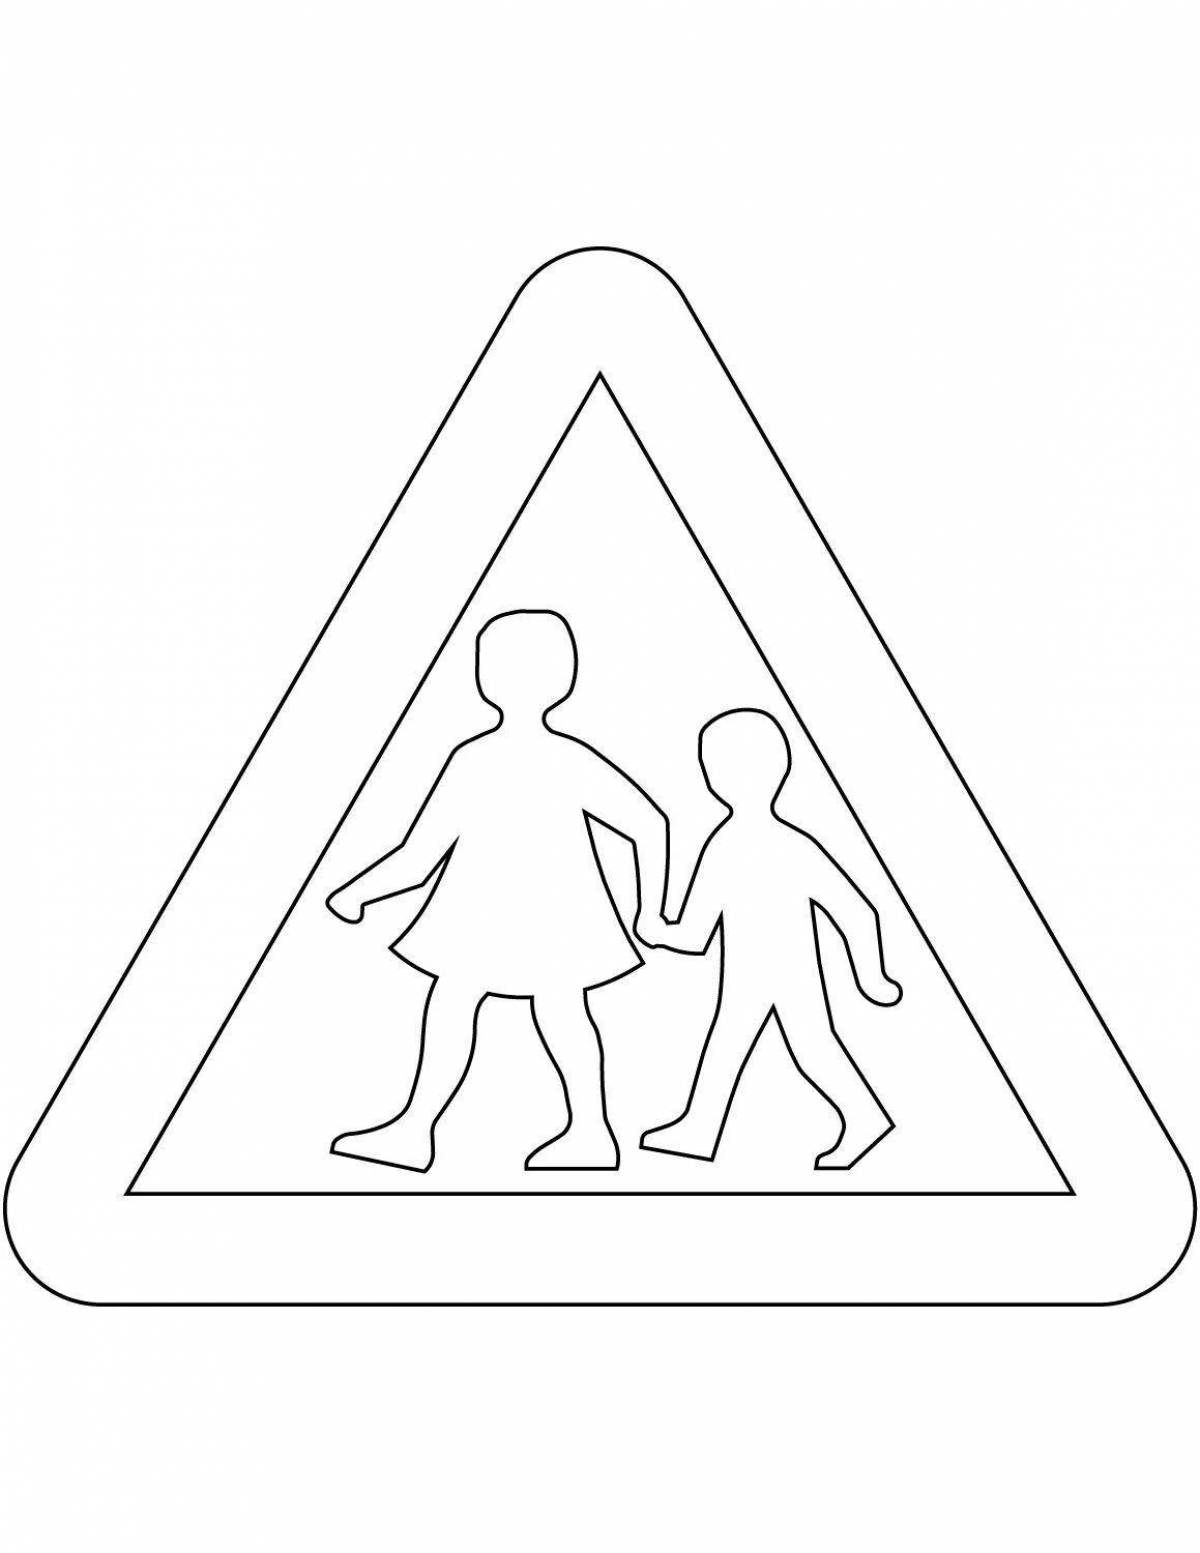 Раскраска дорожный знак с цветными брызгами для дошкольников